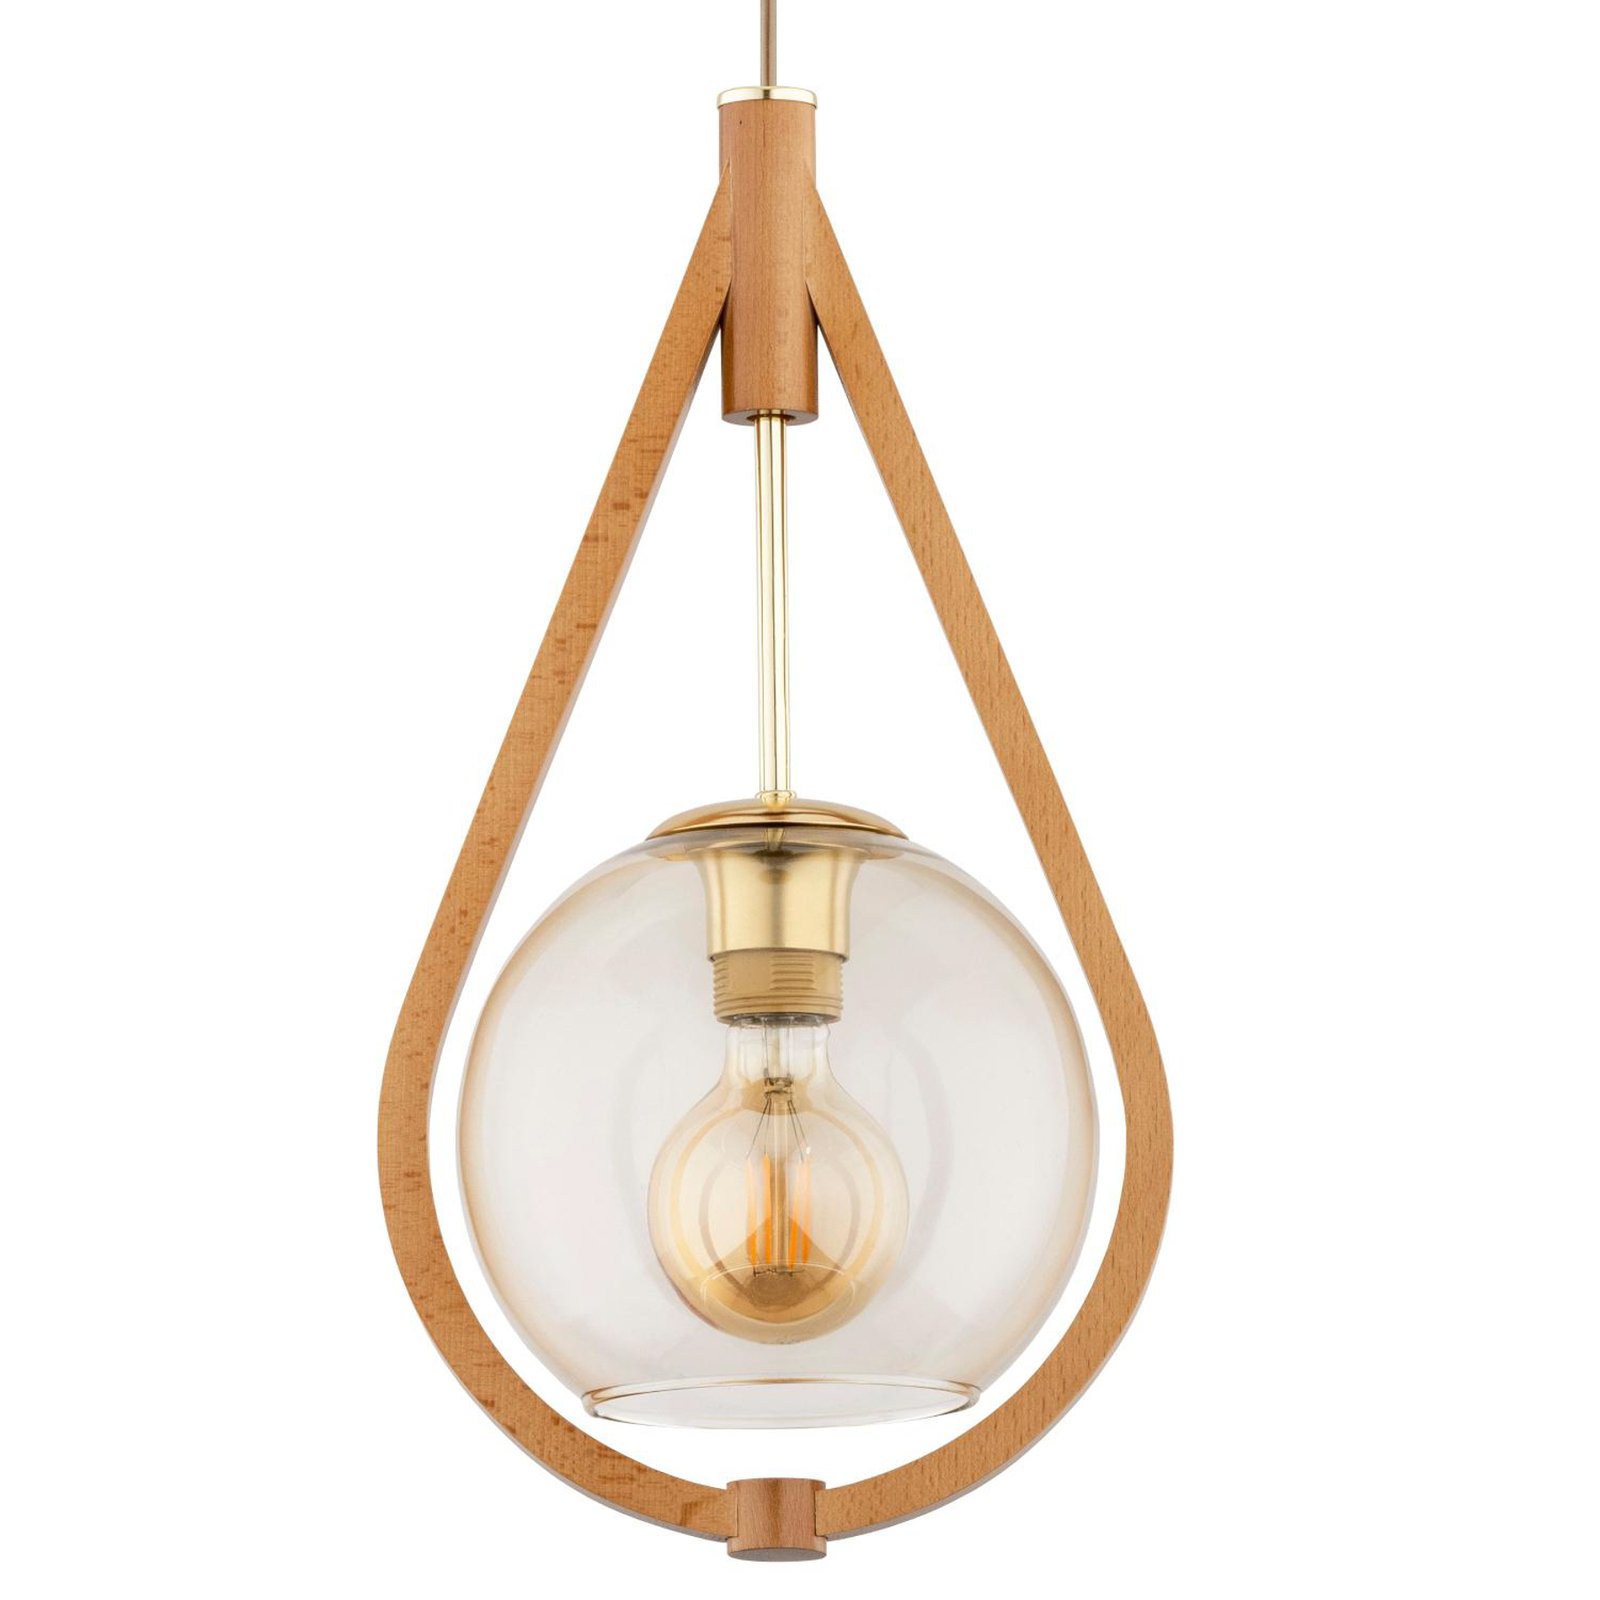 Lampa wisząca Gota, drewno, szkło, Ø 24 cm, zawieszenie 100 cm